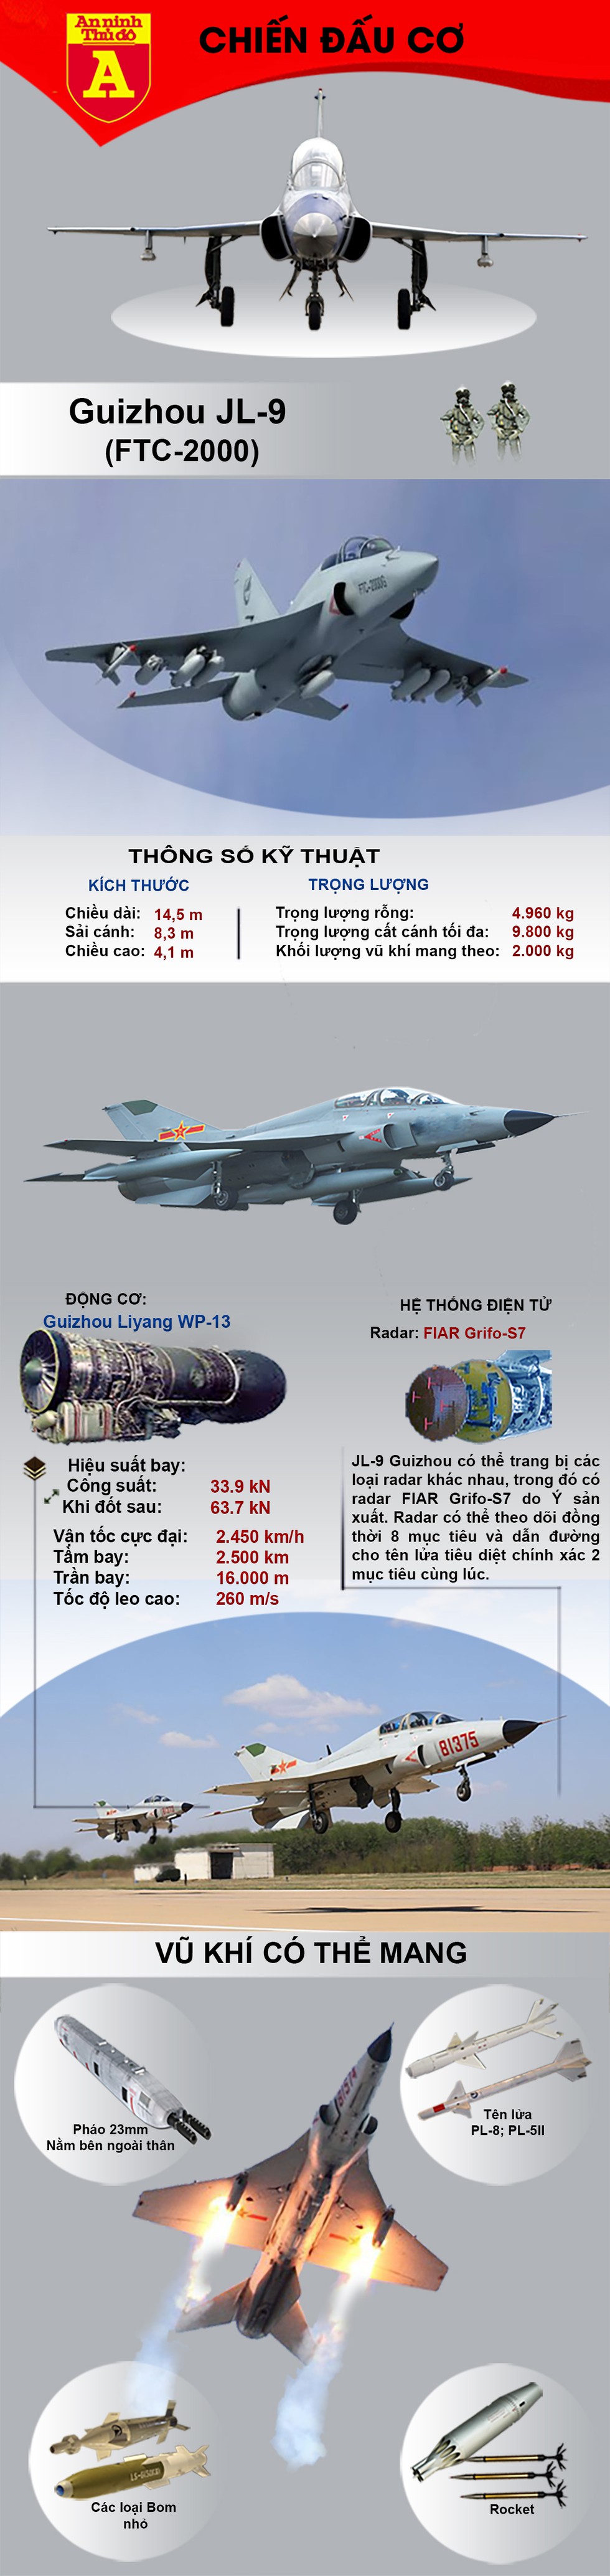 [Infographics] Campuchia bất ngờ đặt mua chiến đấu cơ FTC-2000 của Trung Quốc - Ảnh 1